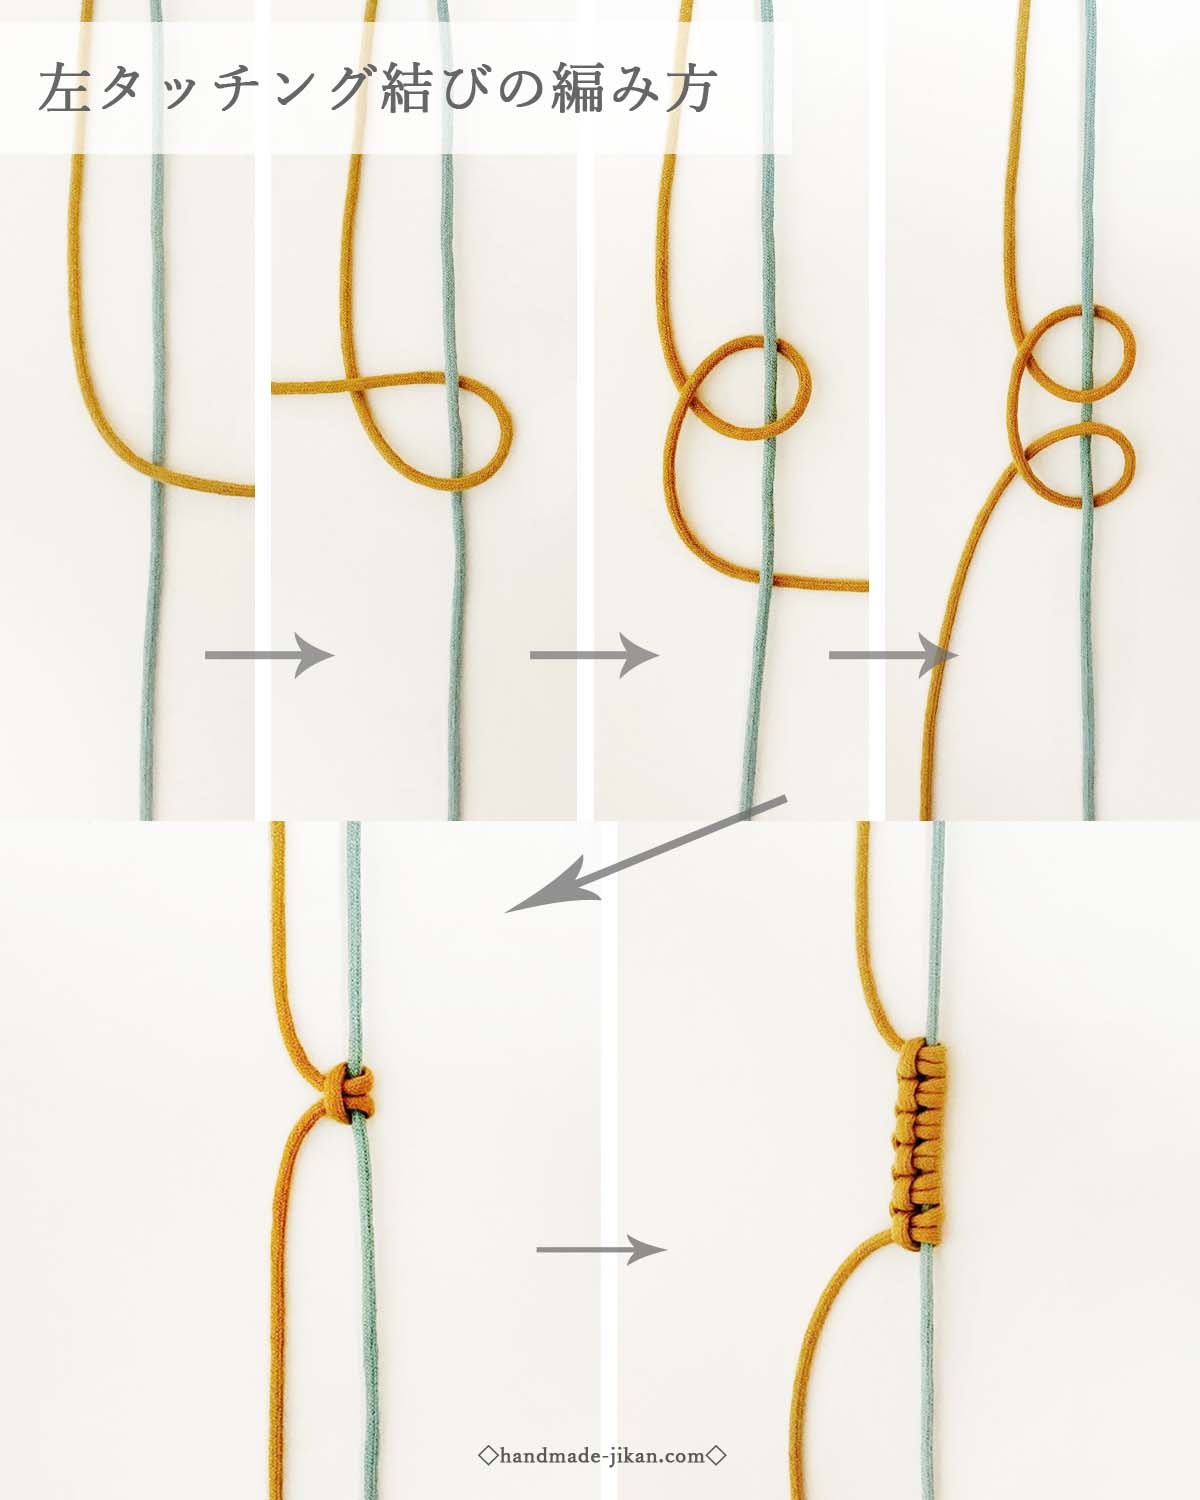 タッチング結びの作り方 編み方 ハンドメイド時間